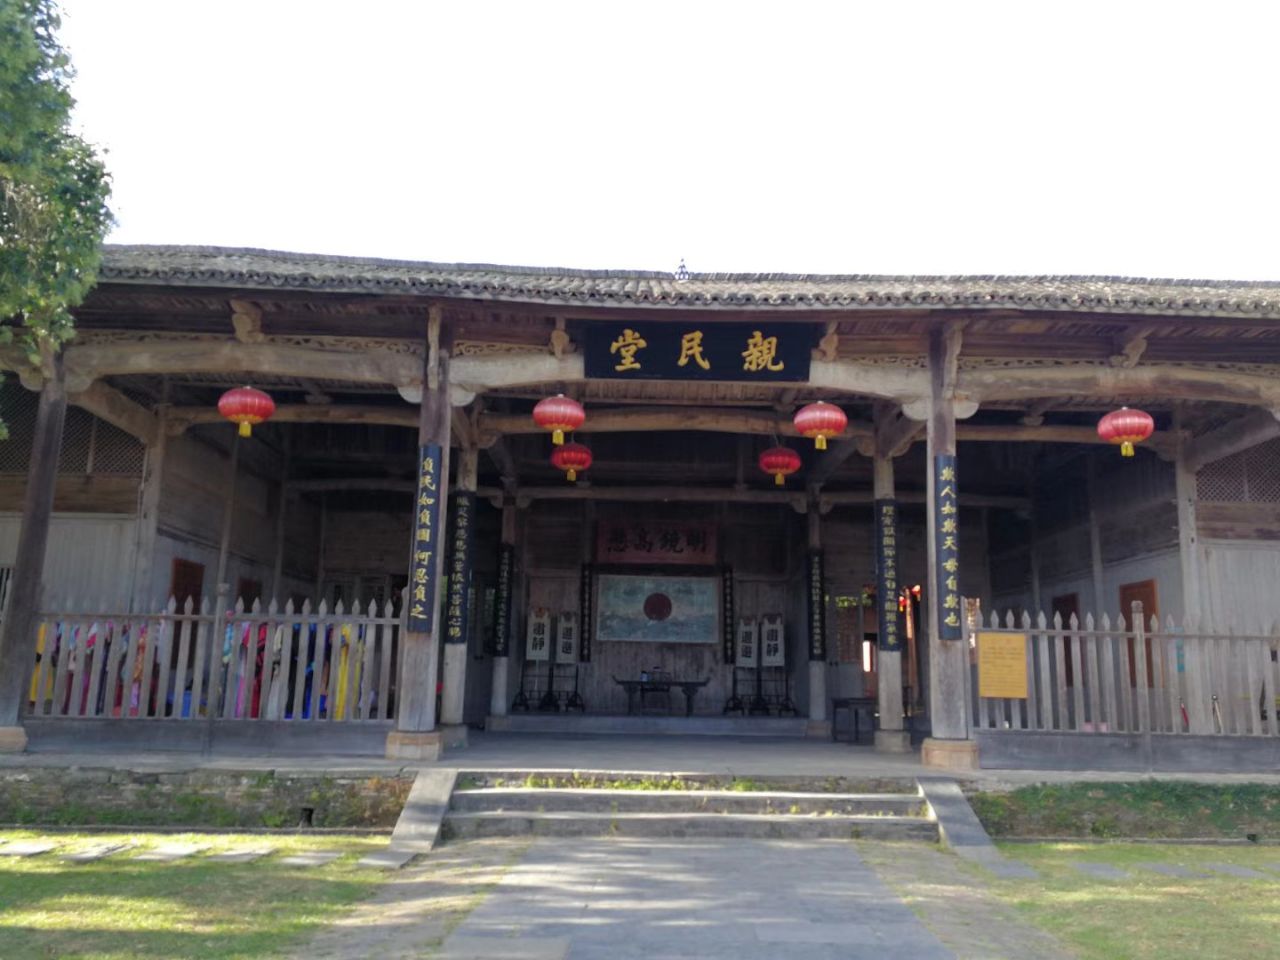 安溪畲族乡黄处村举行了独具当地特色的畲族民俗文化活动